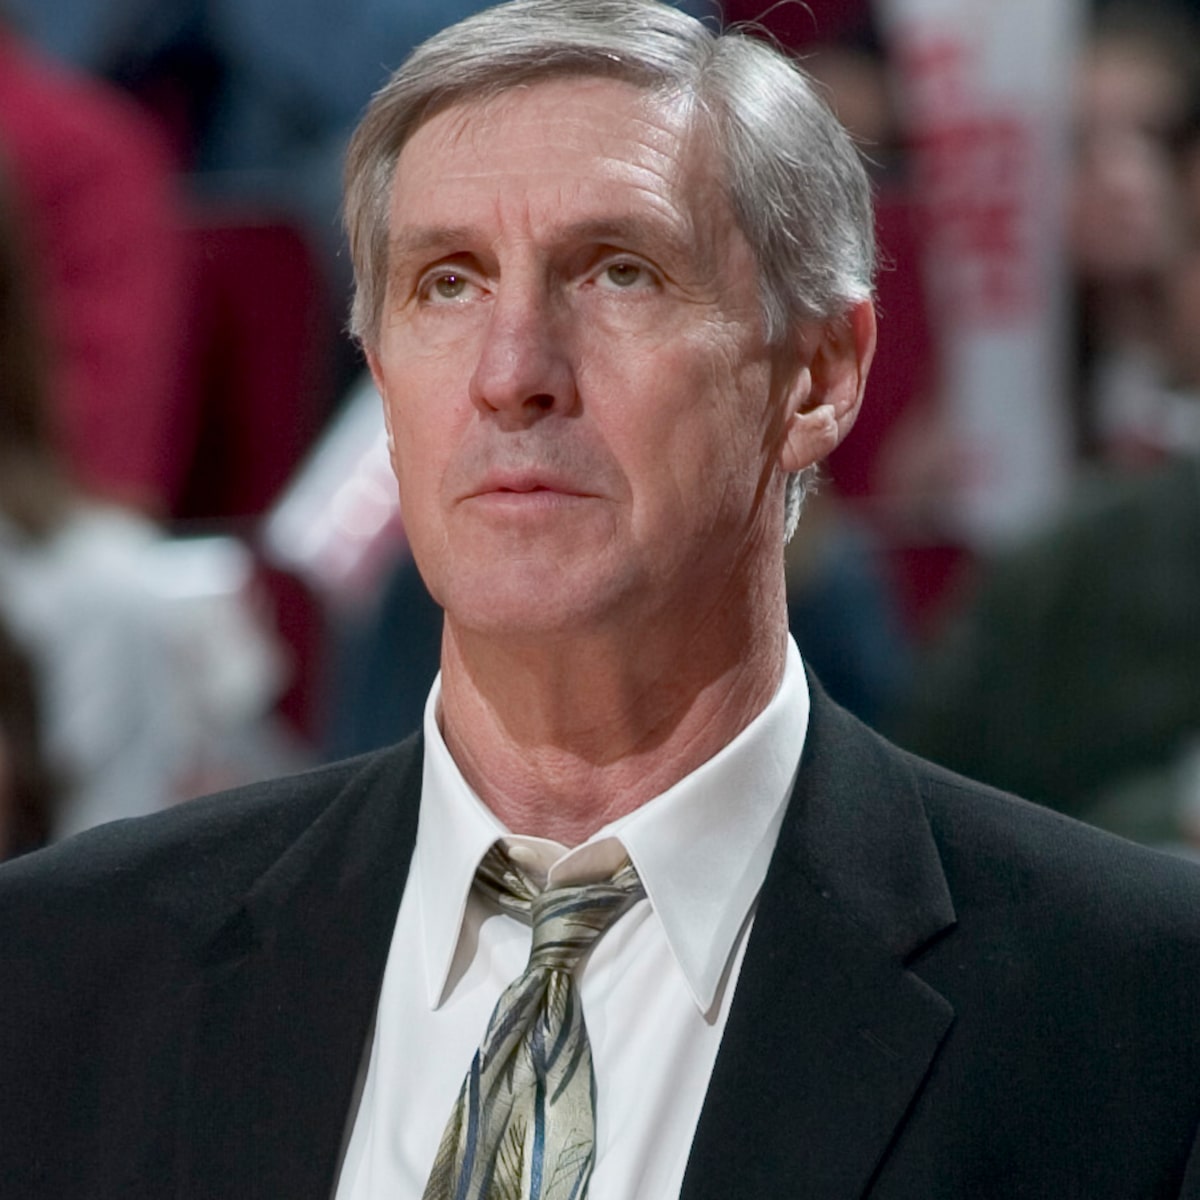 Beloved Utah Jazz coach Jerry Sloan dies at 78 - East Idaho News